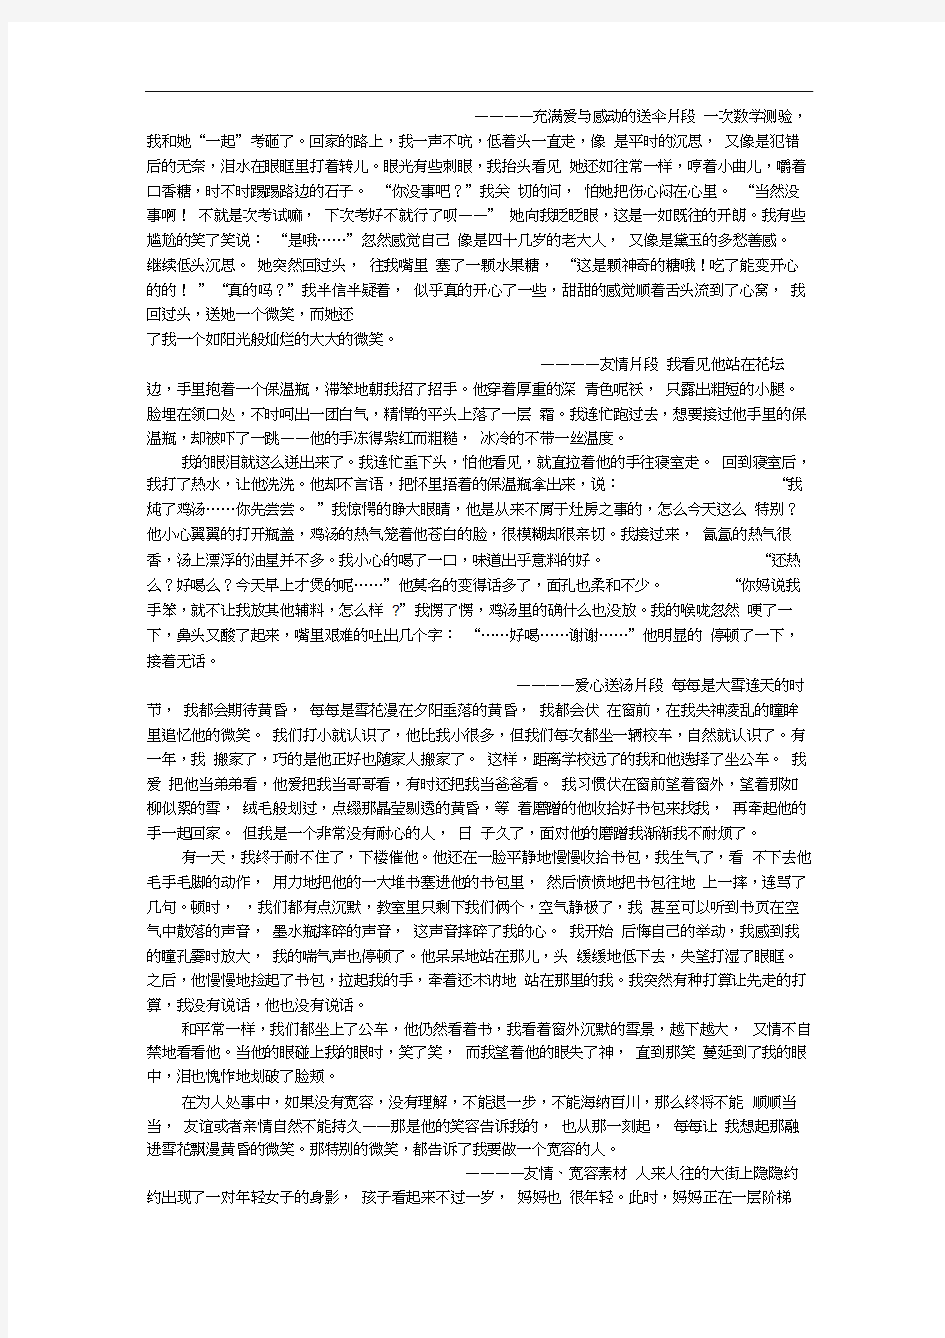 中考语文作文经典素材(20201001005618)